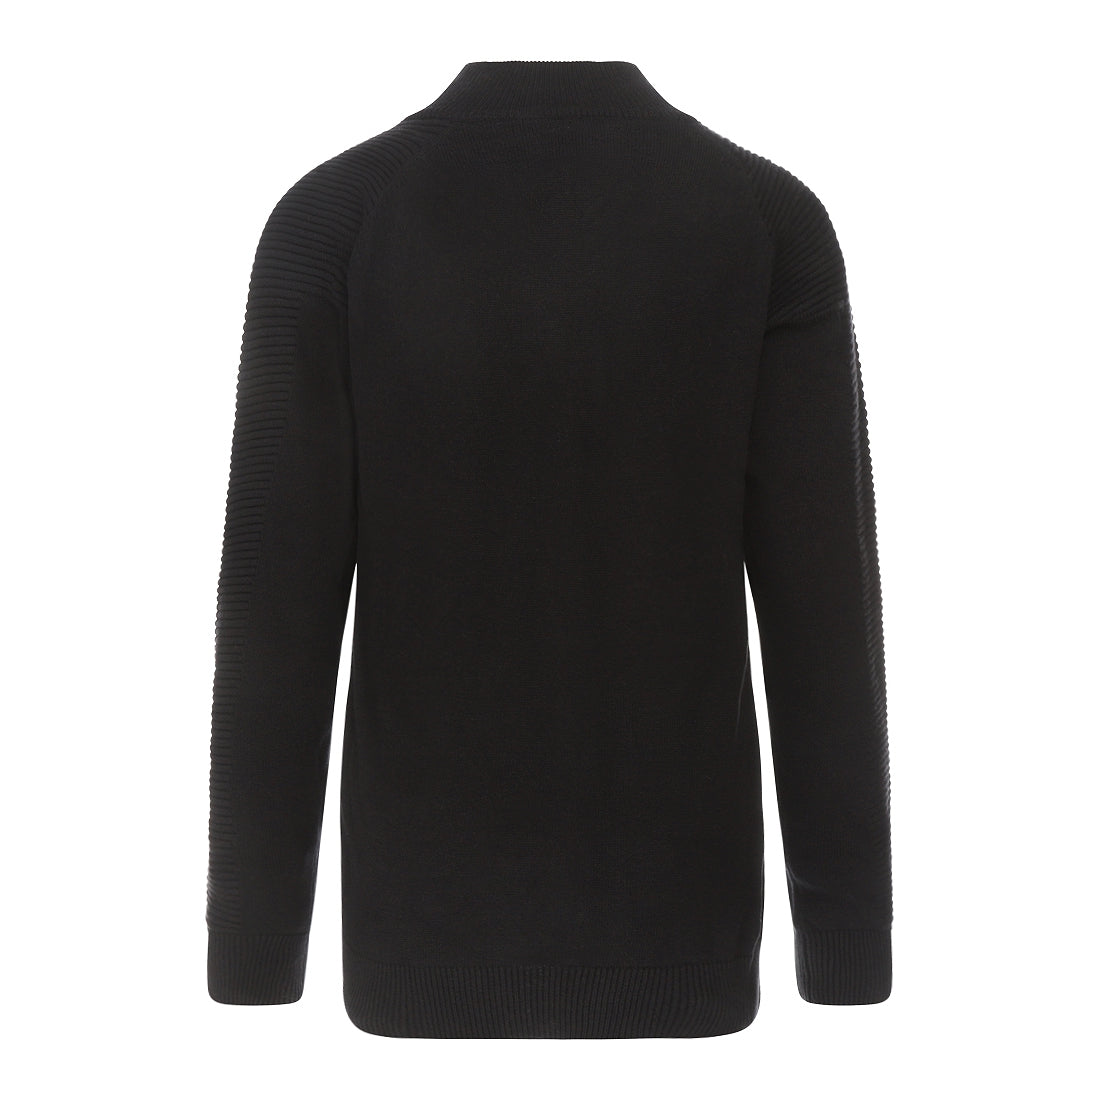 Jongens Sweater with collar van No Way Monday in de kleur Black in maat 164.